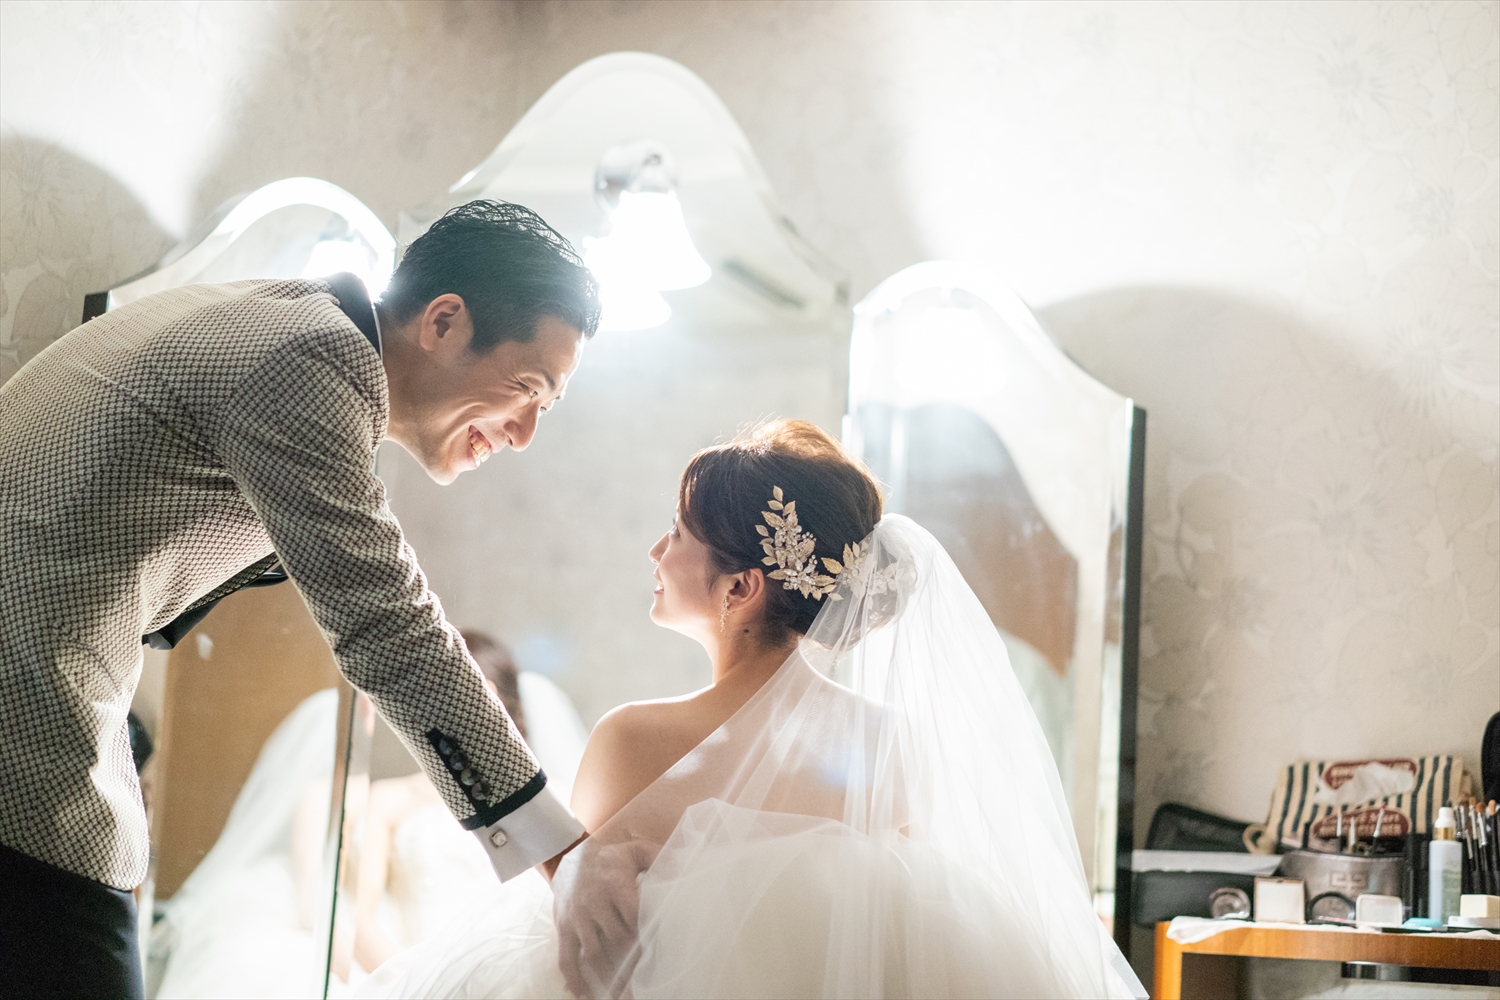 大阪のゲストハウスでの結婚式写真撮影 結婚式ビデオ撮影 写真撮影なら月山映像へ 大阪 神戸 京都